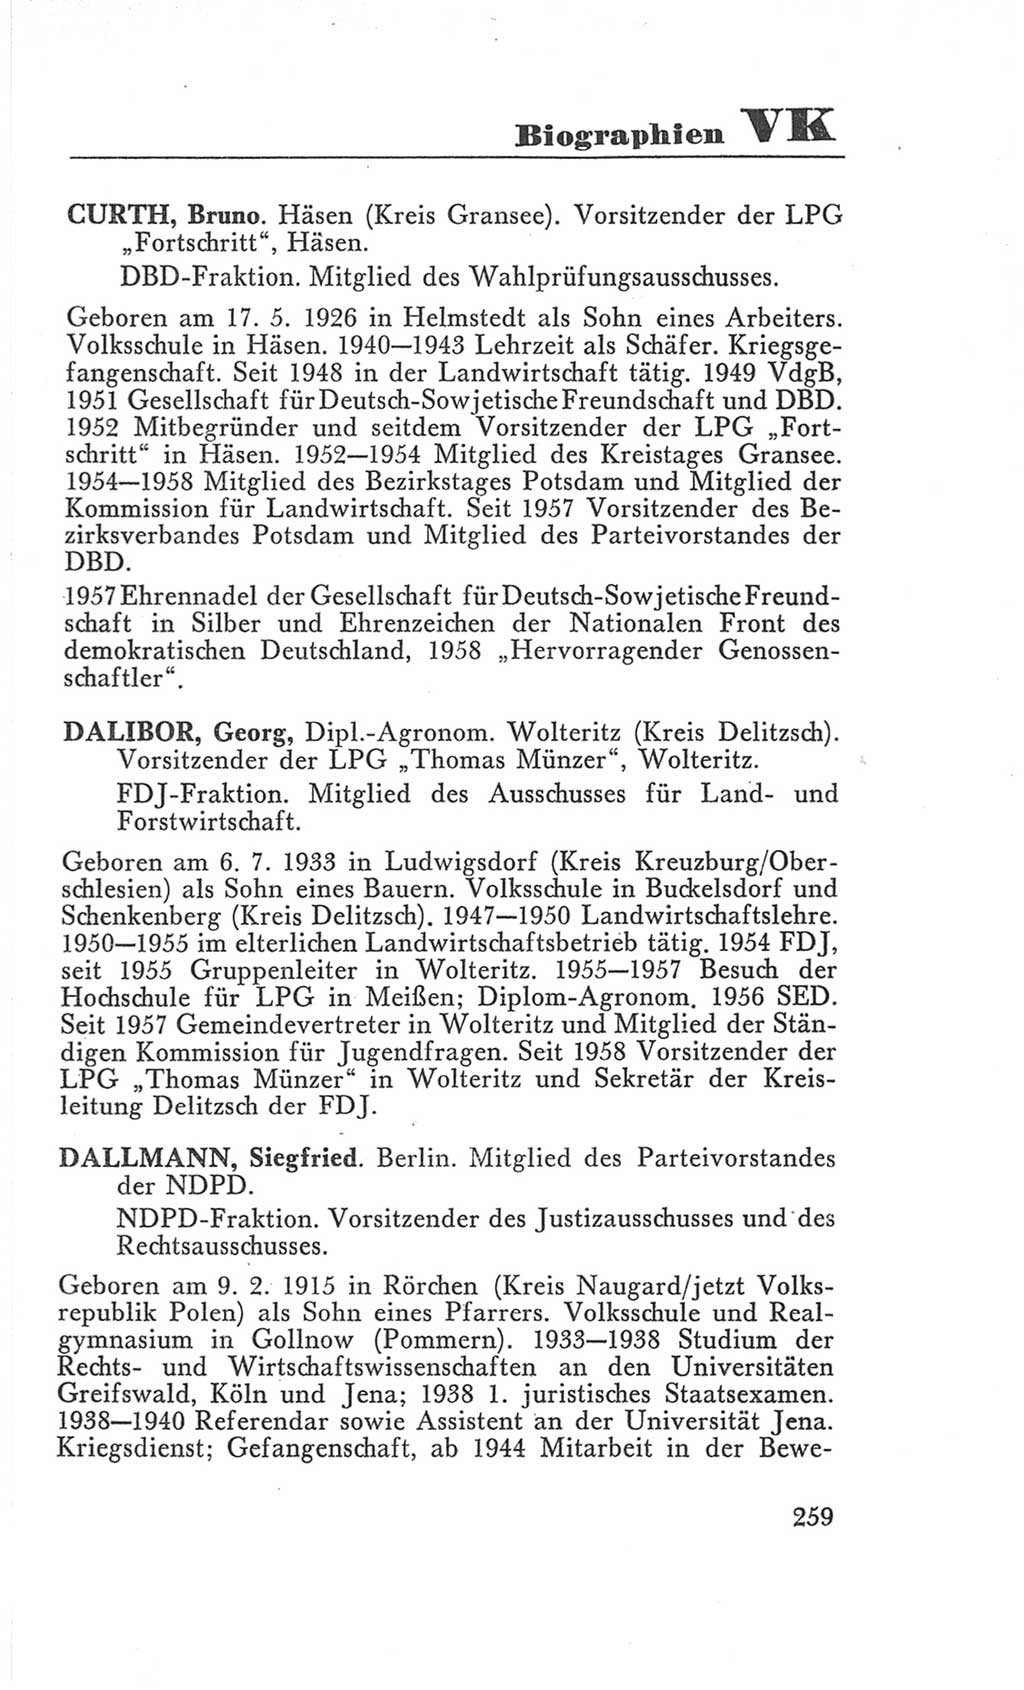 Handbuch der Volkskammer (VK) der Deutschen Demokratischen Republik (DDR), 3. Wahlperiode 1958-1963, Seite 259 (Hdb. VK. DDR 3. WP. 1958-1963, S. 259)